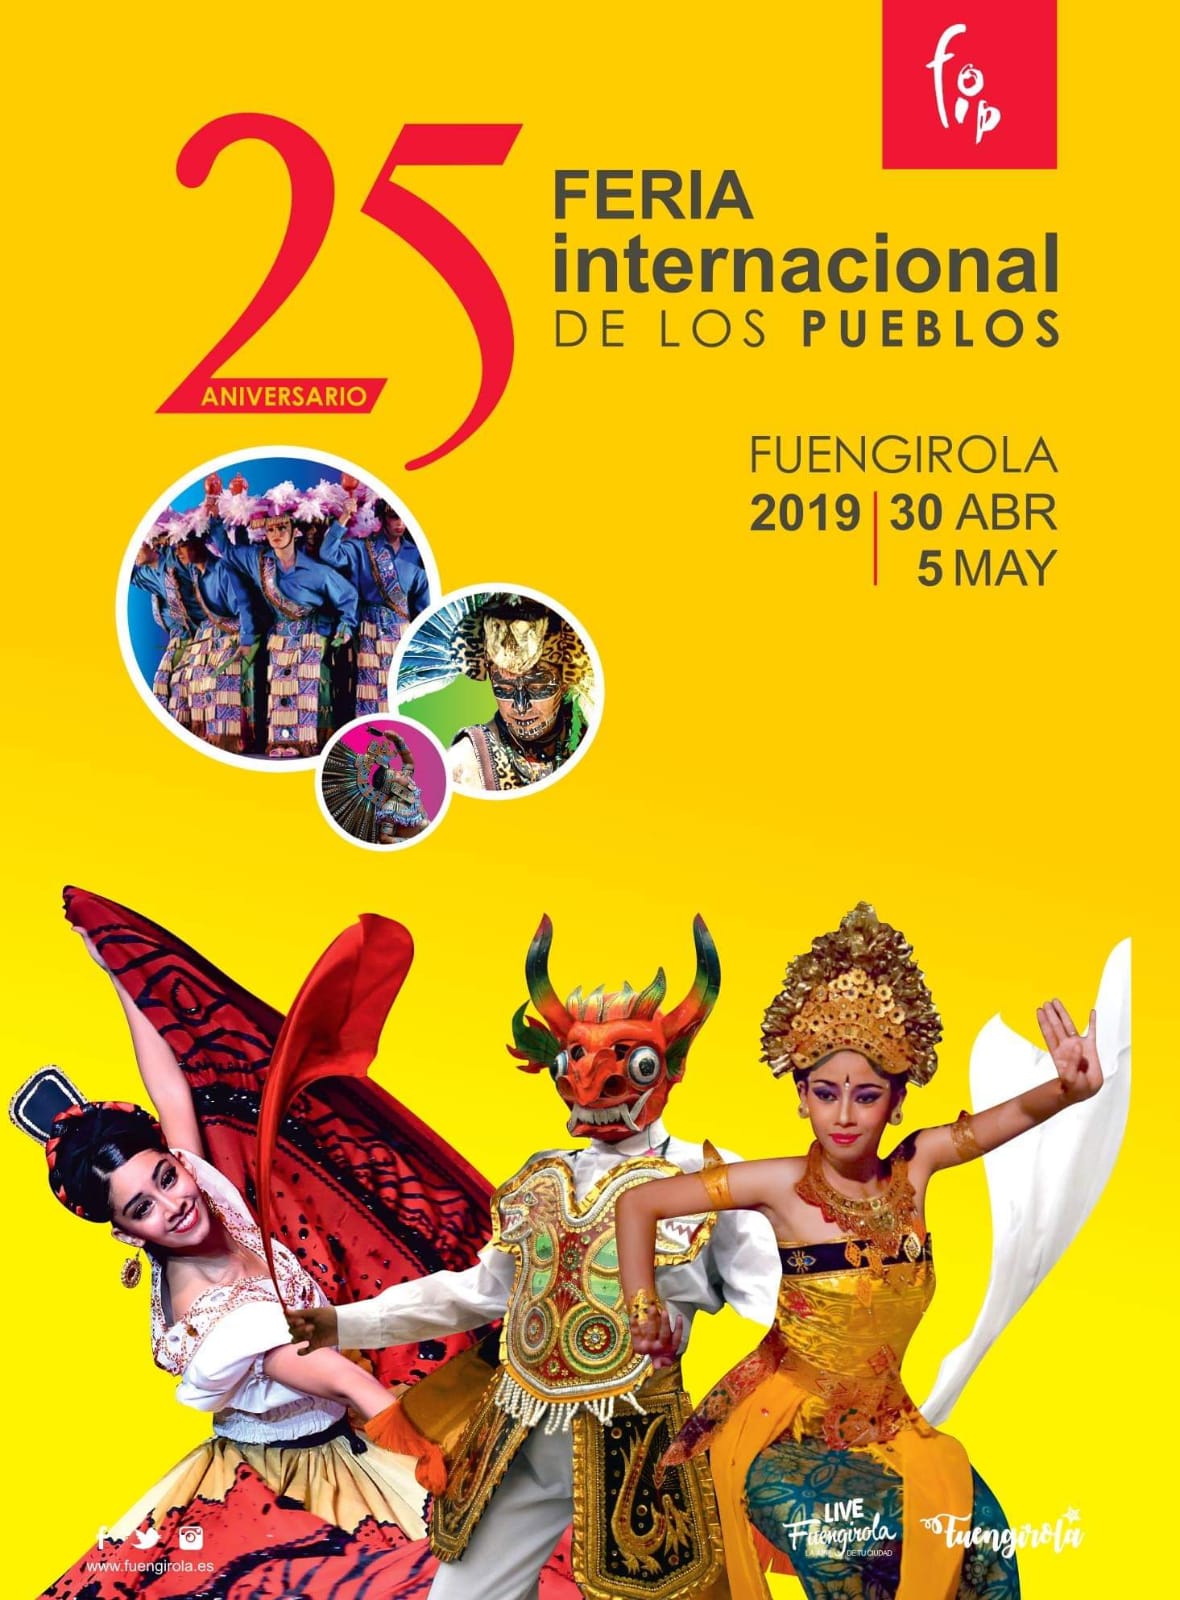 Feria Internacional de los Pueblos (FIP)